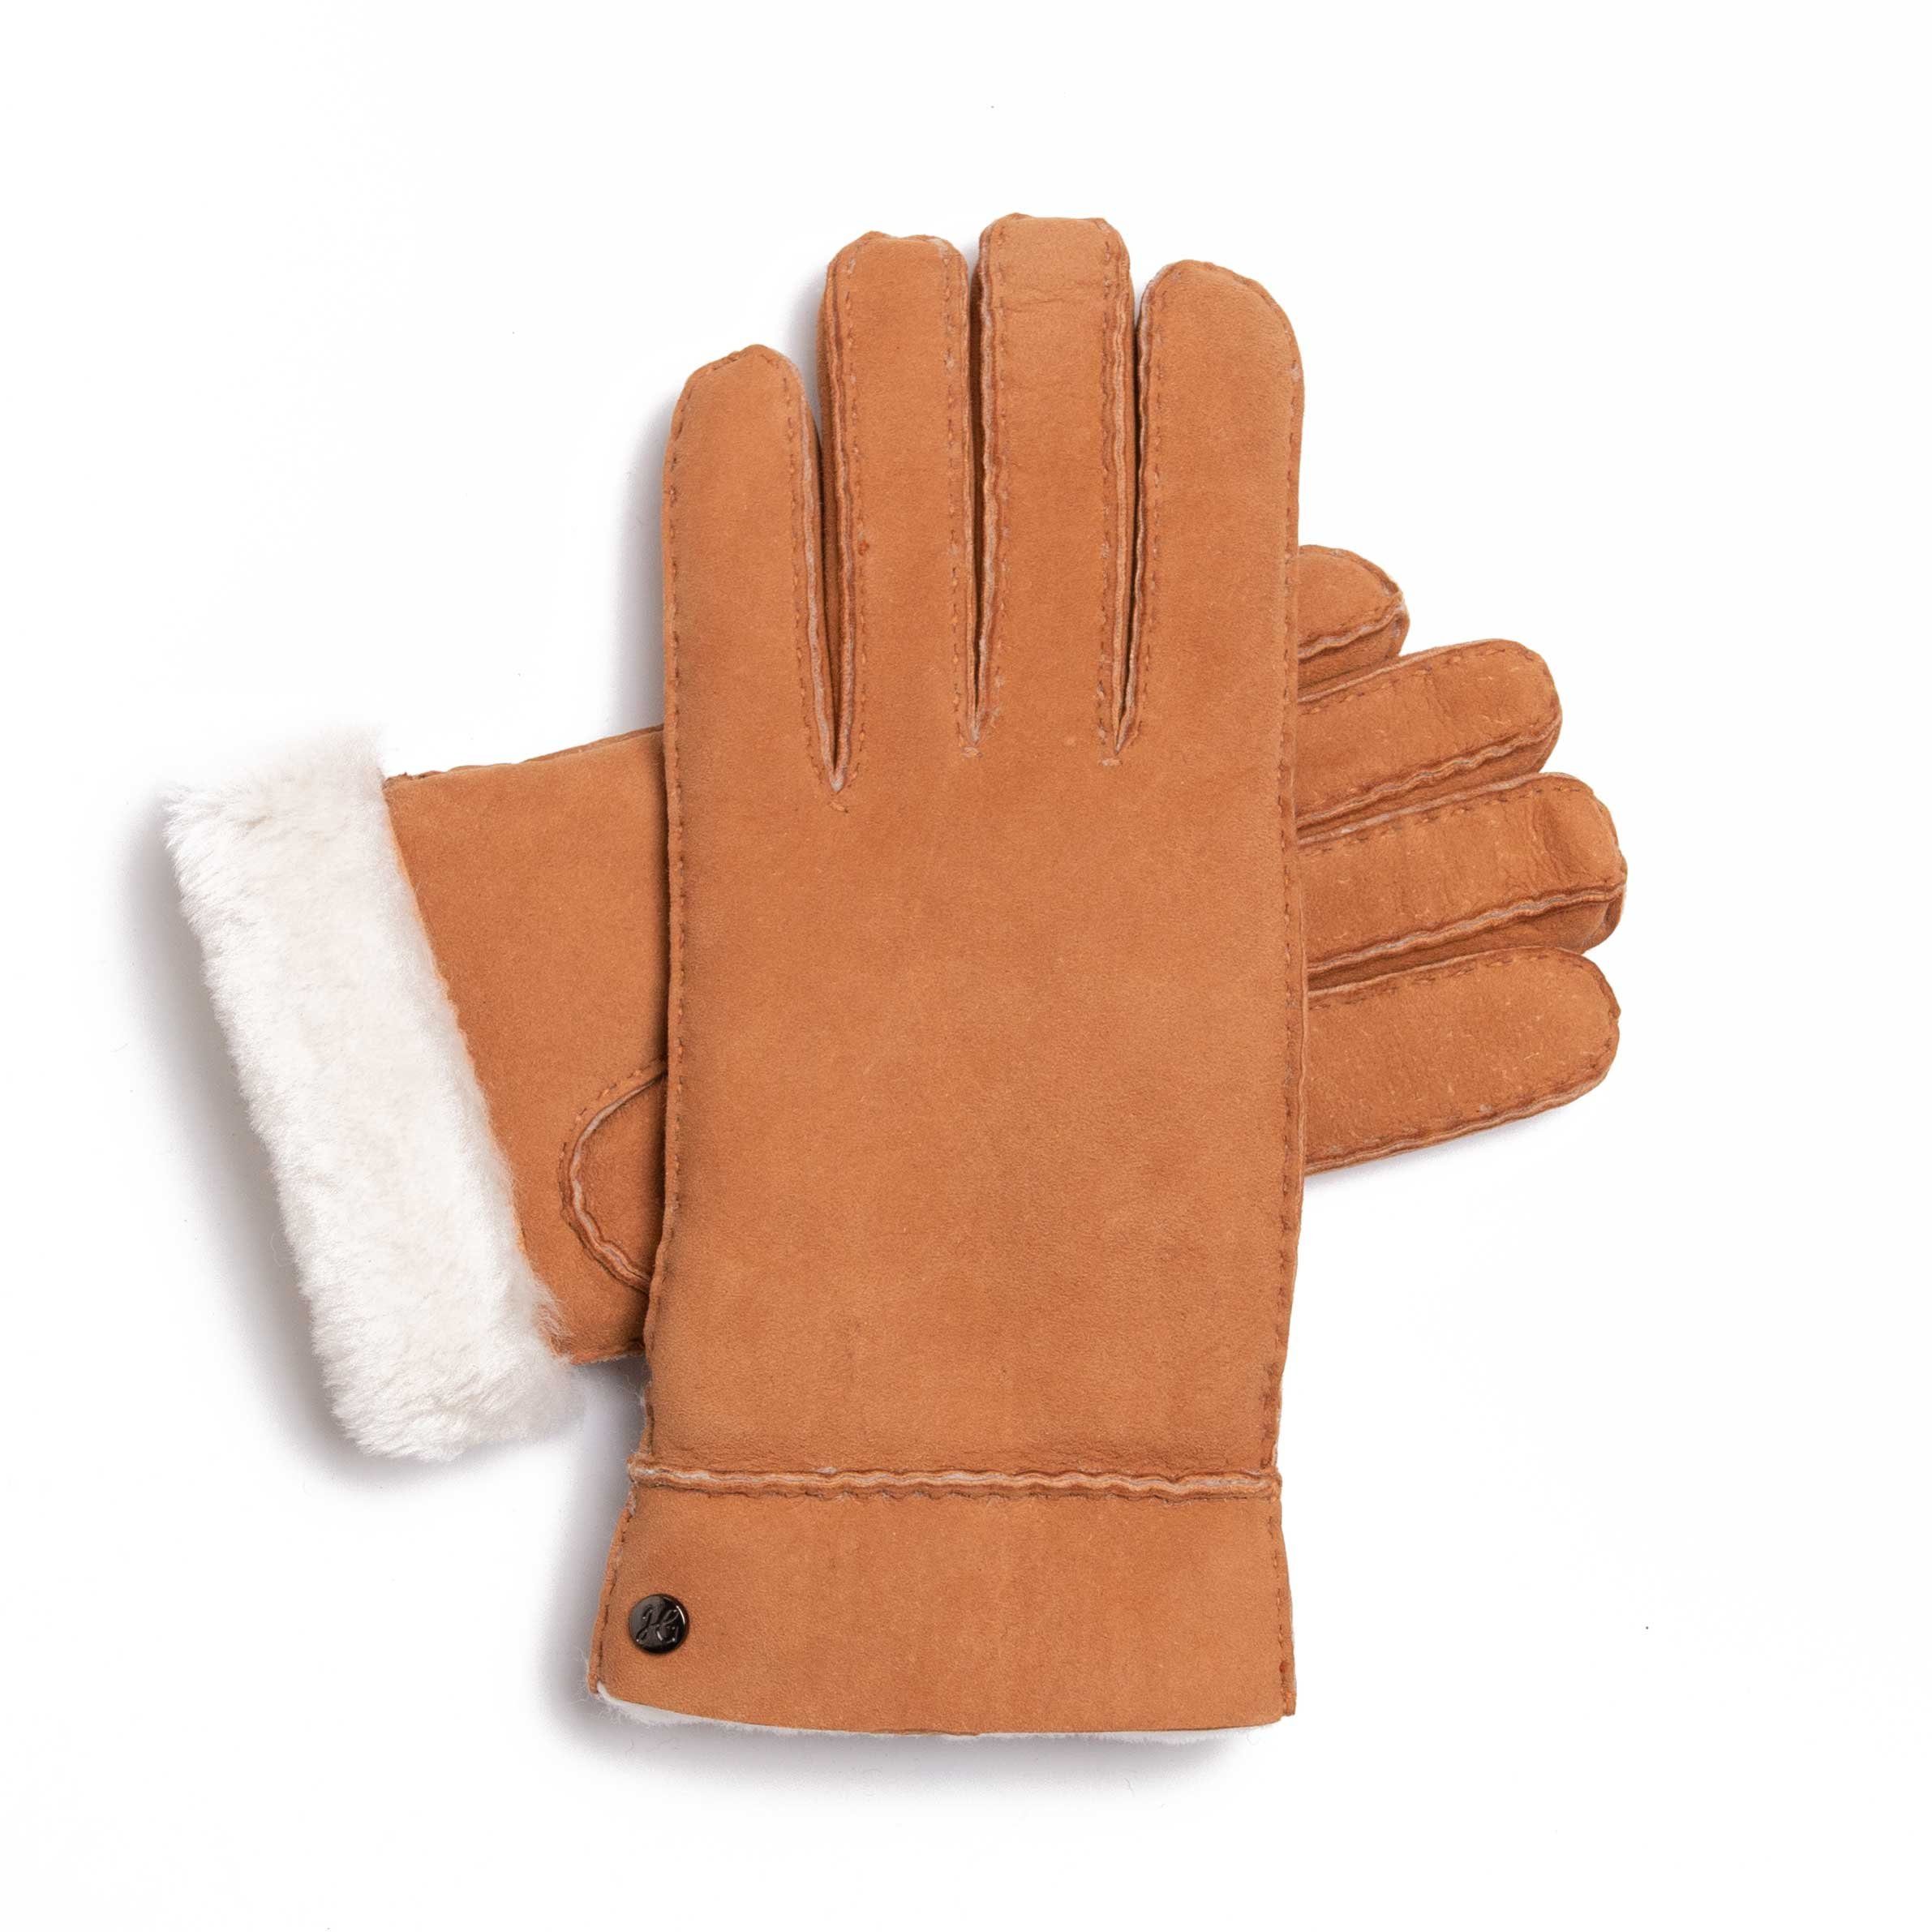 Hand Gewand by Weikert Lederhandschuhe EVA - Lammfell-Handschuhe aus spanischem Merino-Lammfell Natur